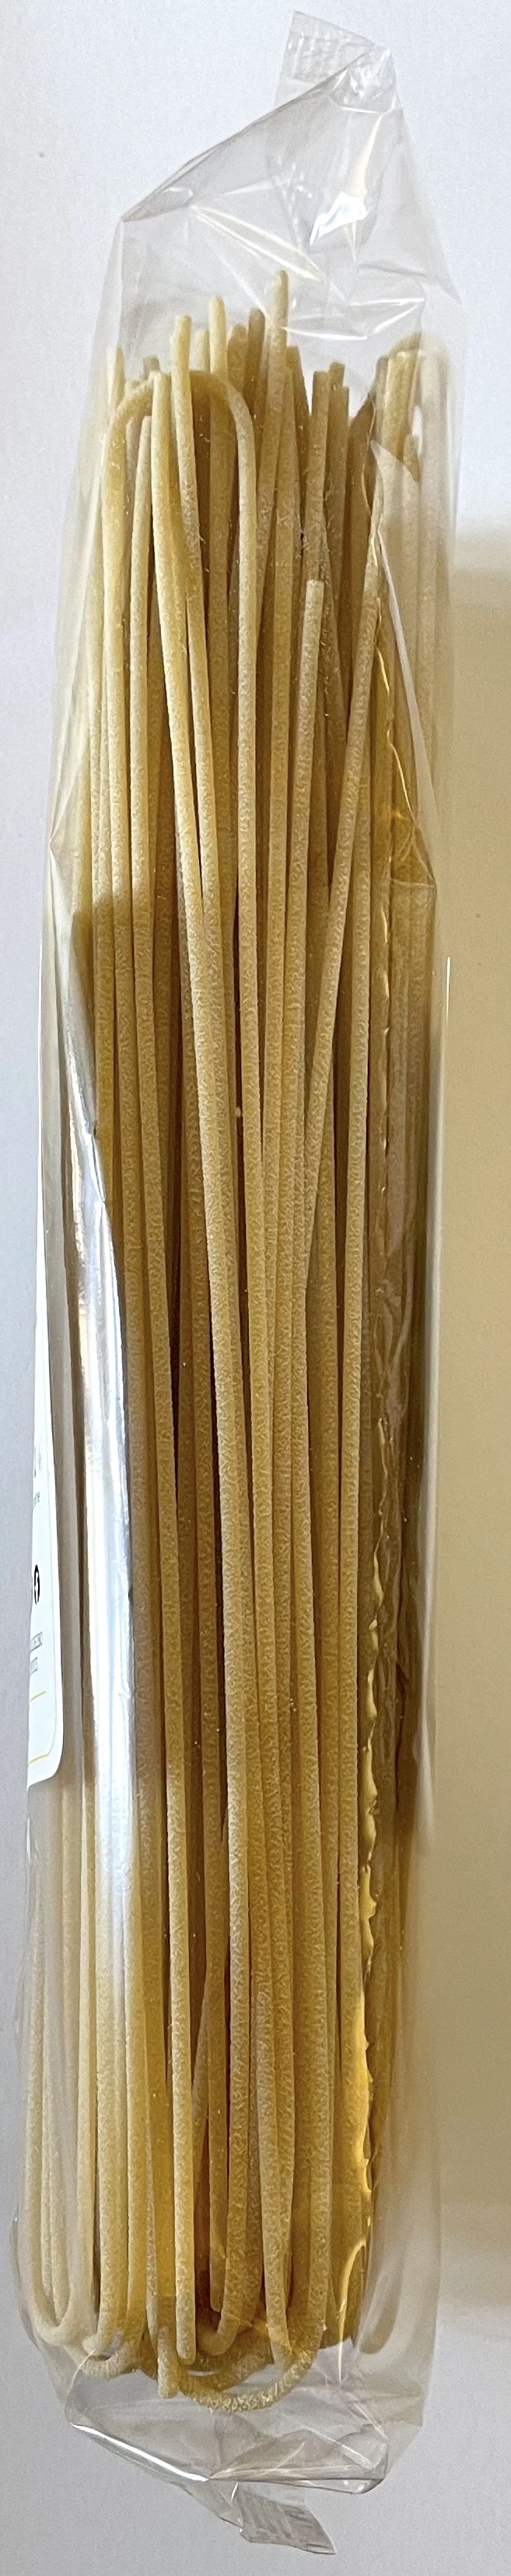 Spaghettoni Tre di Oro - 500 gr